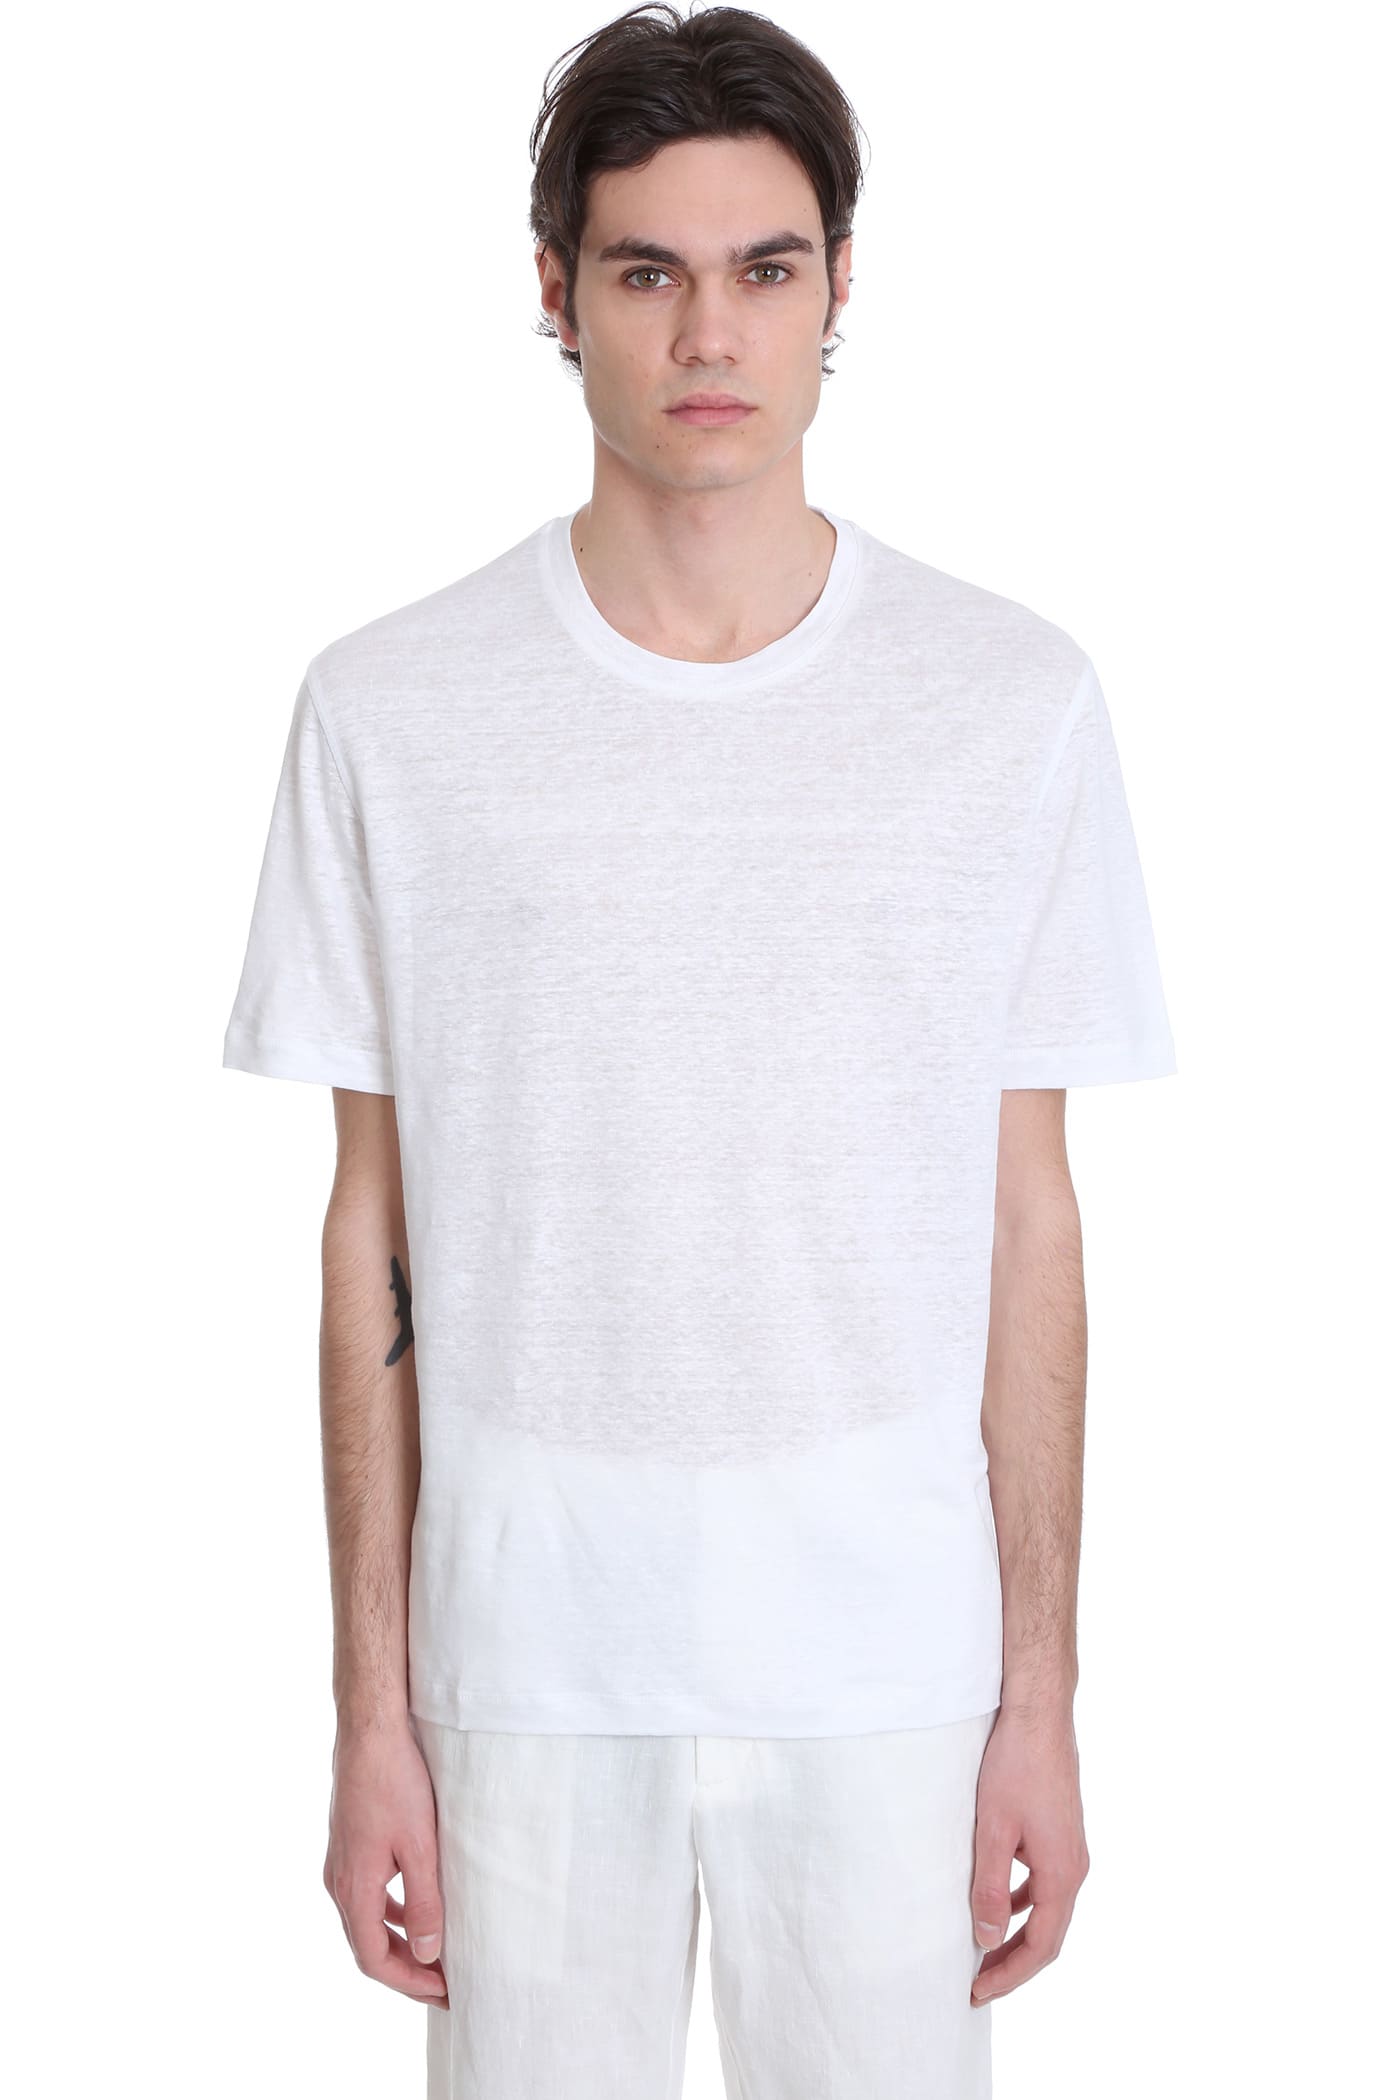 Ermenegildo Zegna T-shirt In White Triacetate